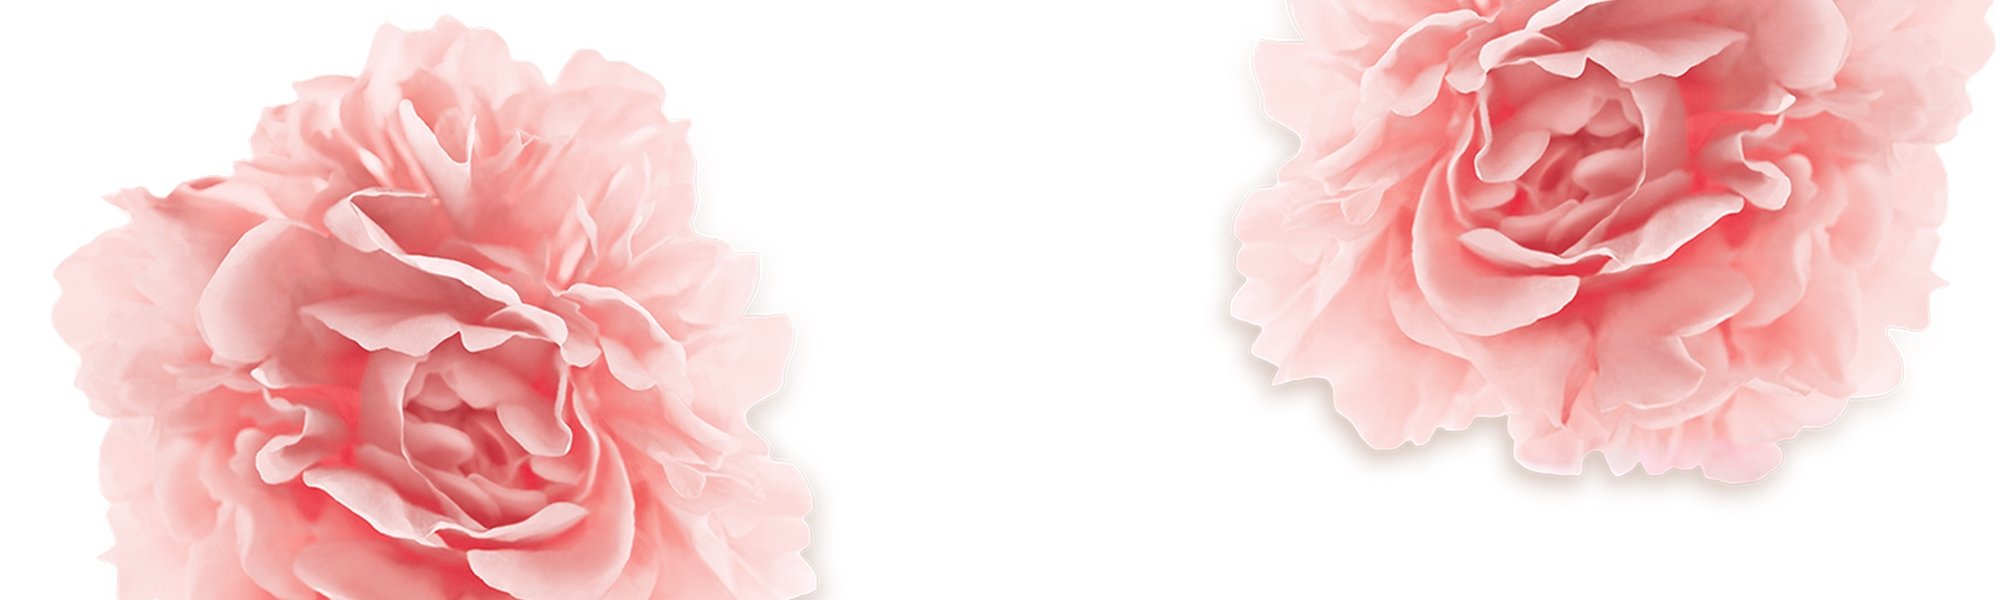 Zwei Pfingstrosen-Blüten